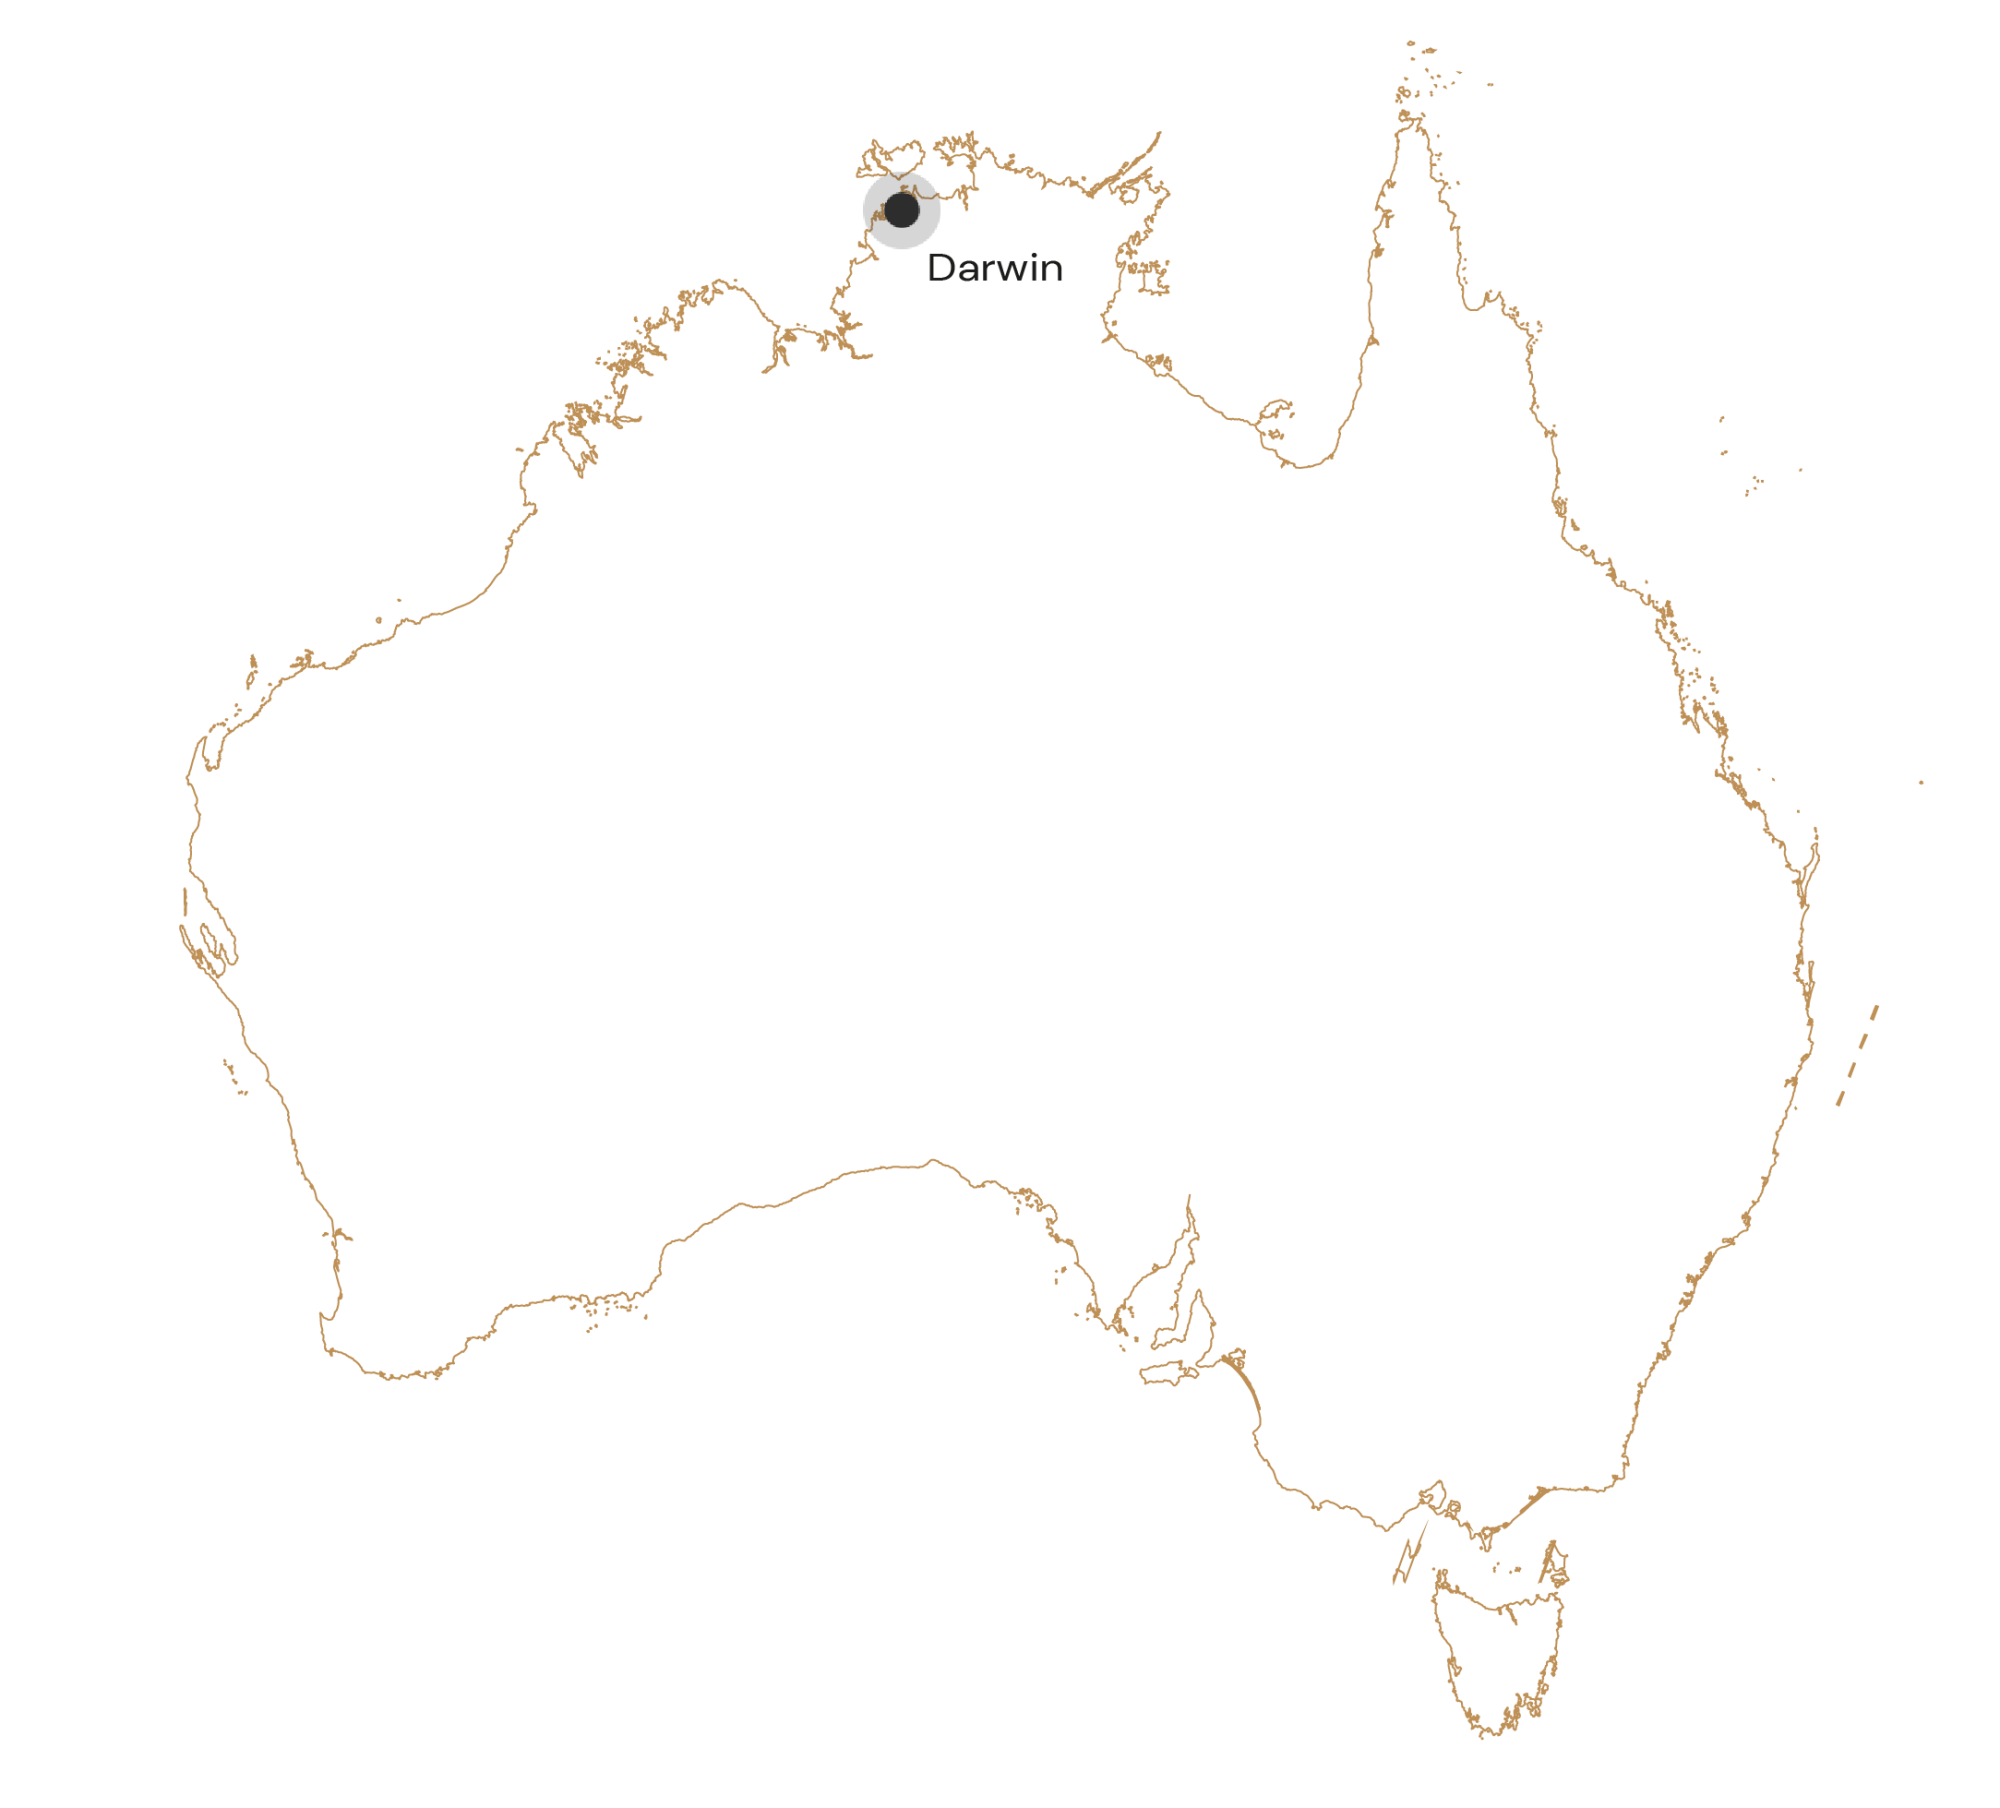 Route camperreis vanuit Darwin - Australië